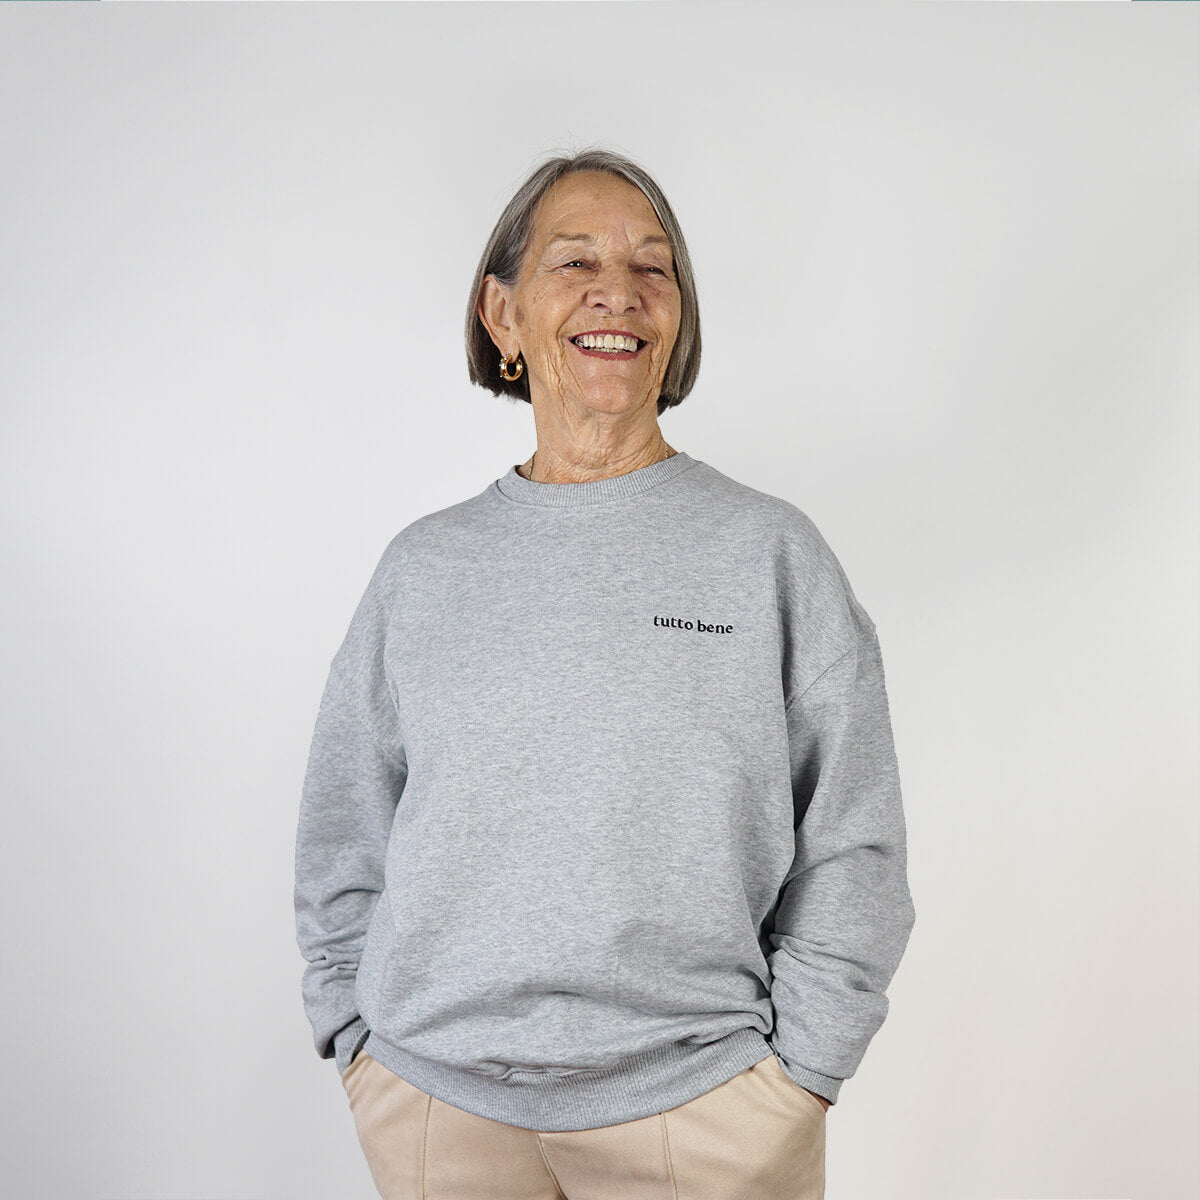 Ältere Frau die einen grauer Sweater der Marke "studio ciao" mit "tutto bene" Stickerei auf der Brust trägt.